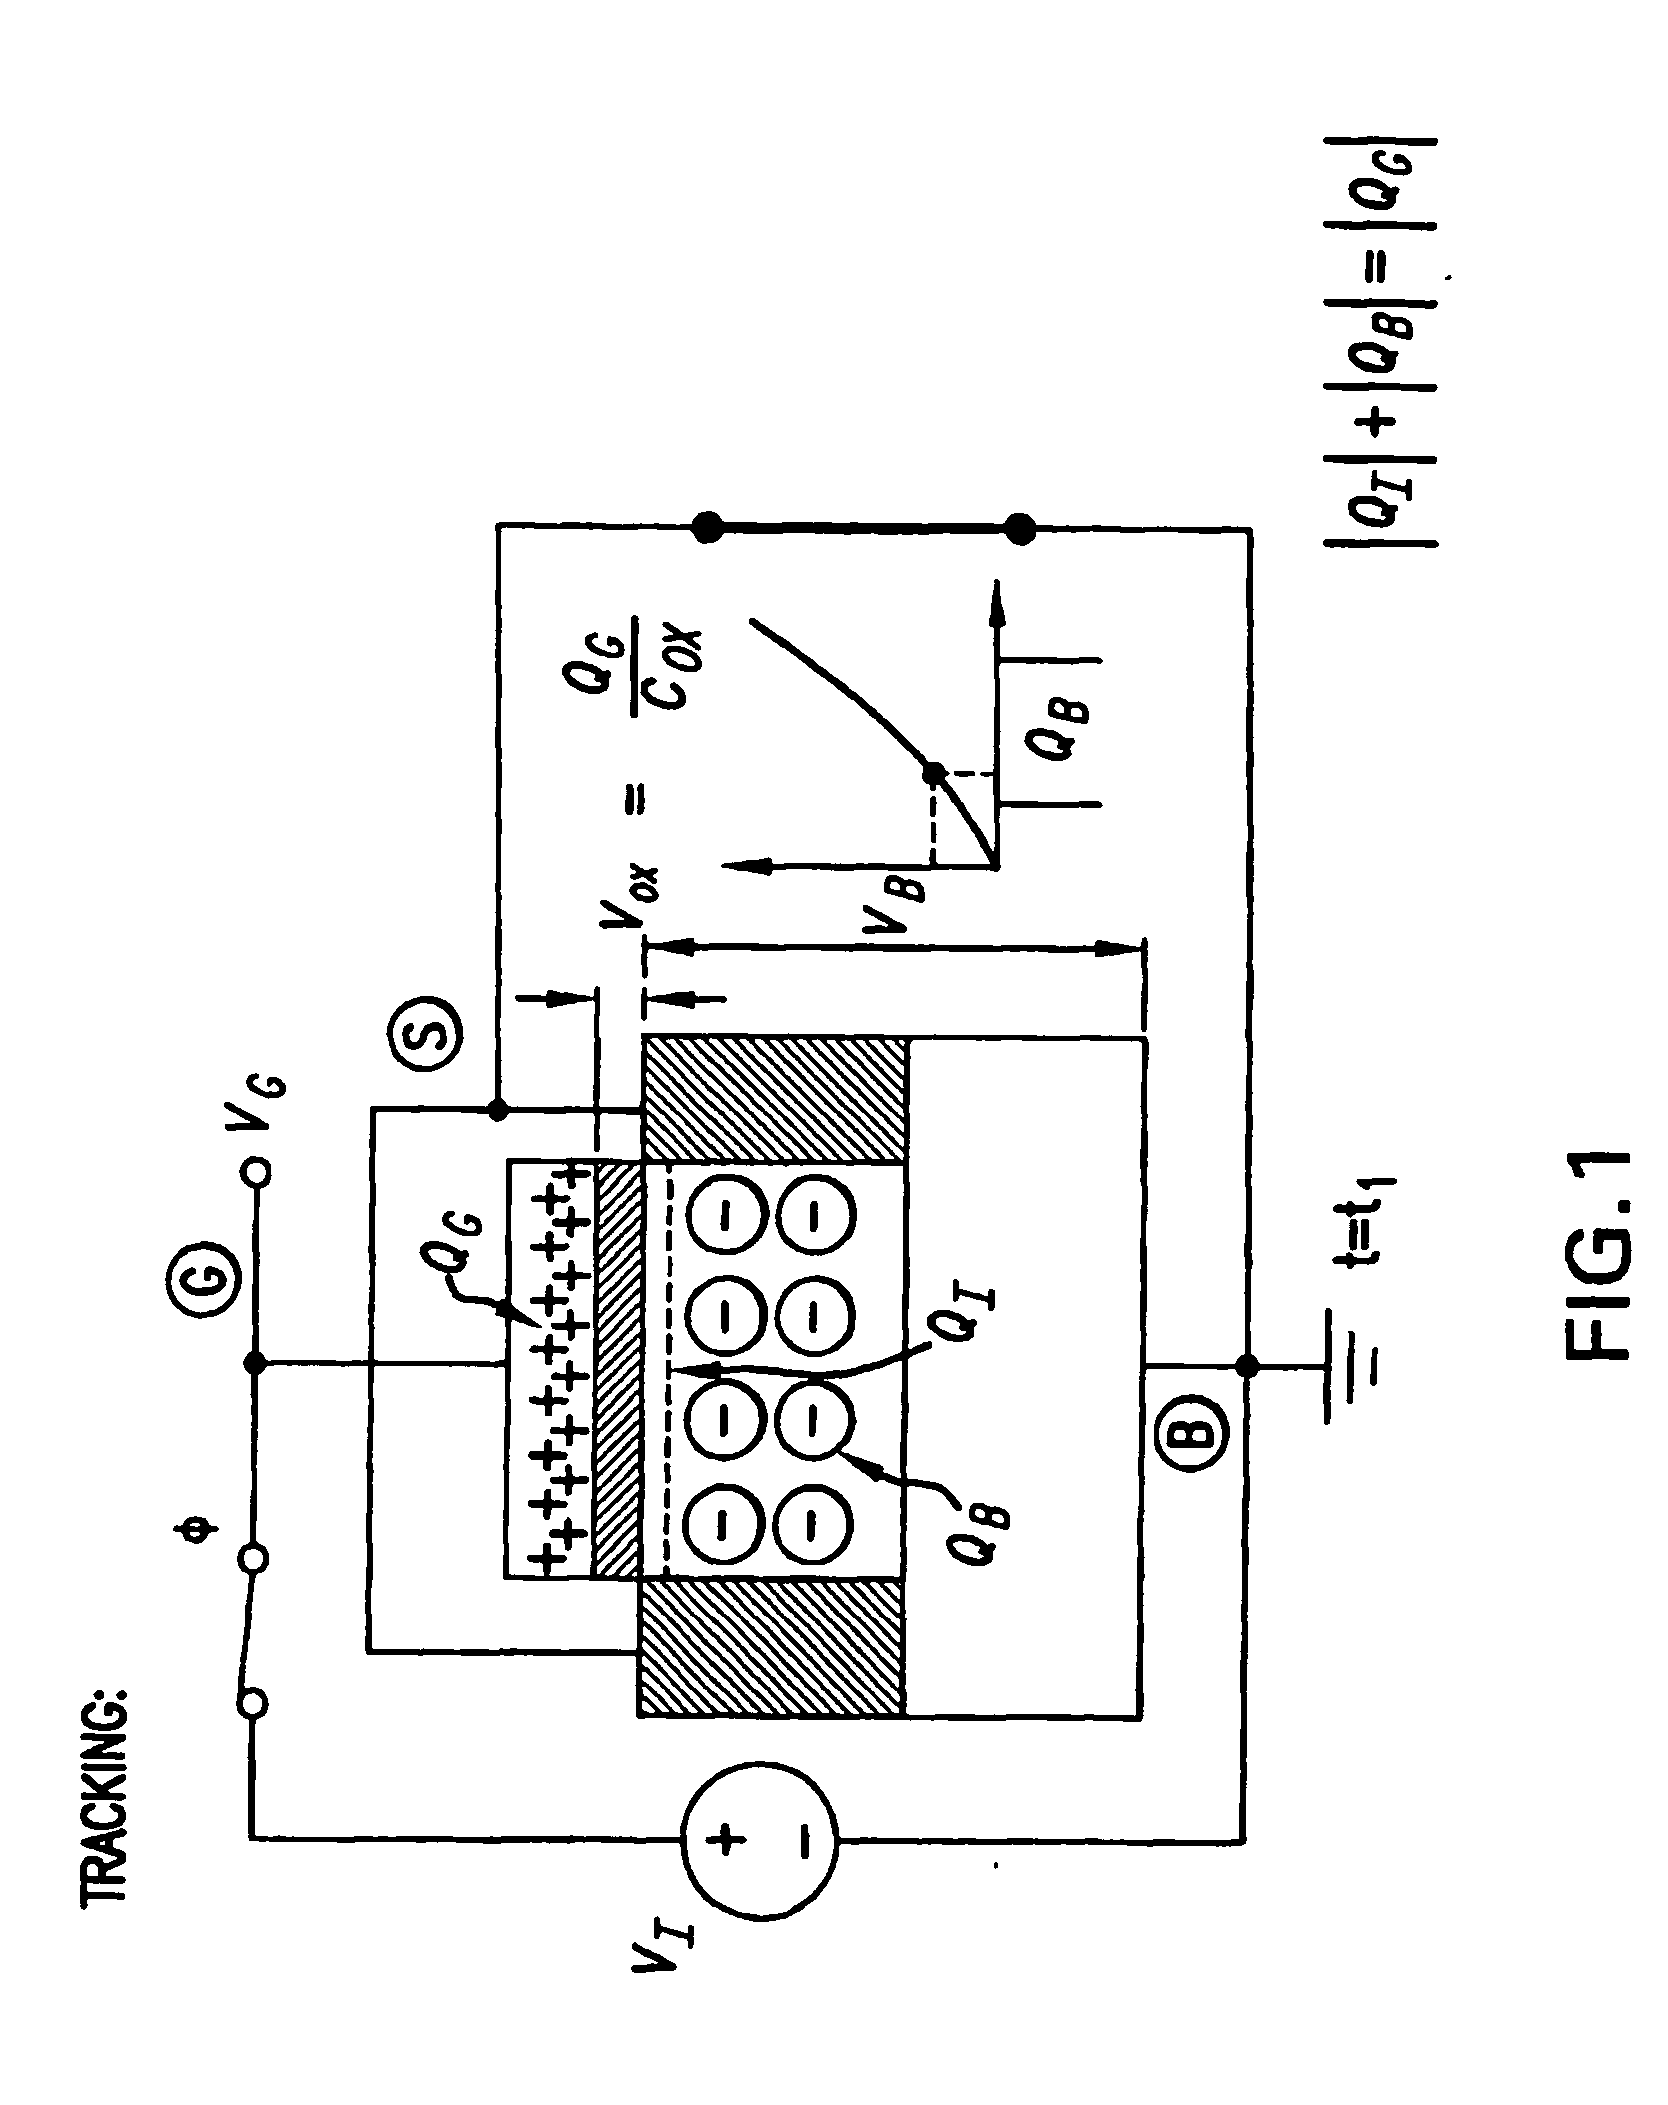 MOSFET parametric amplifier